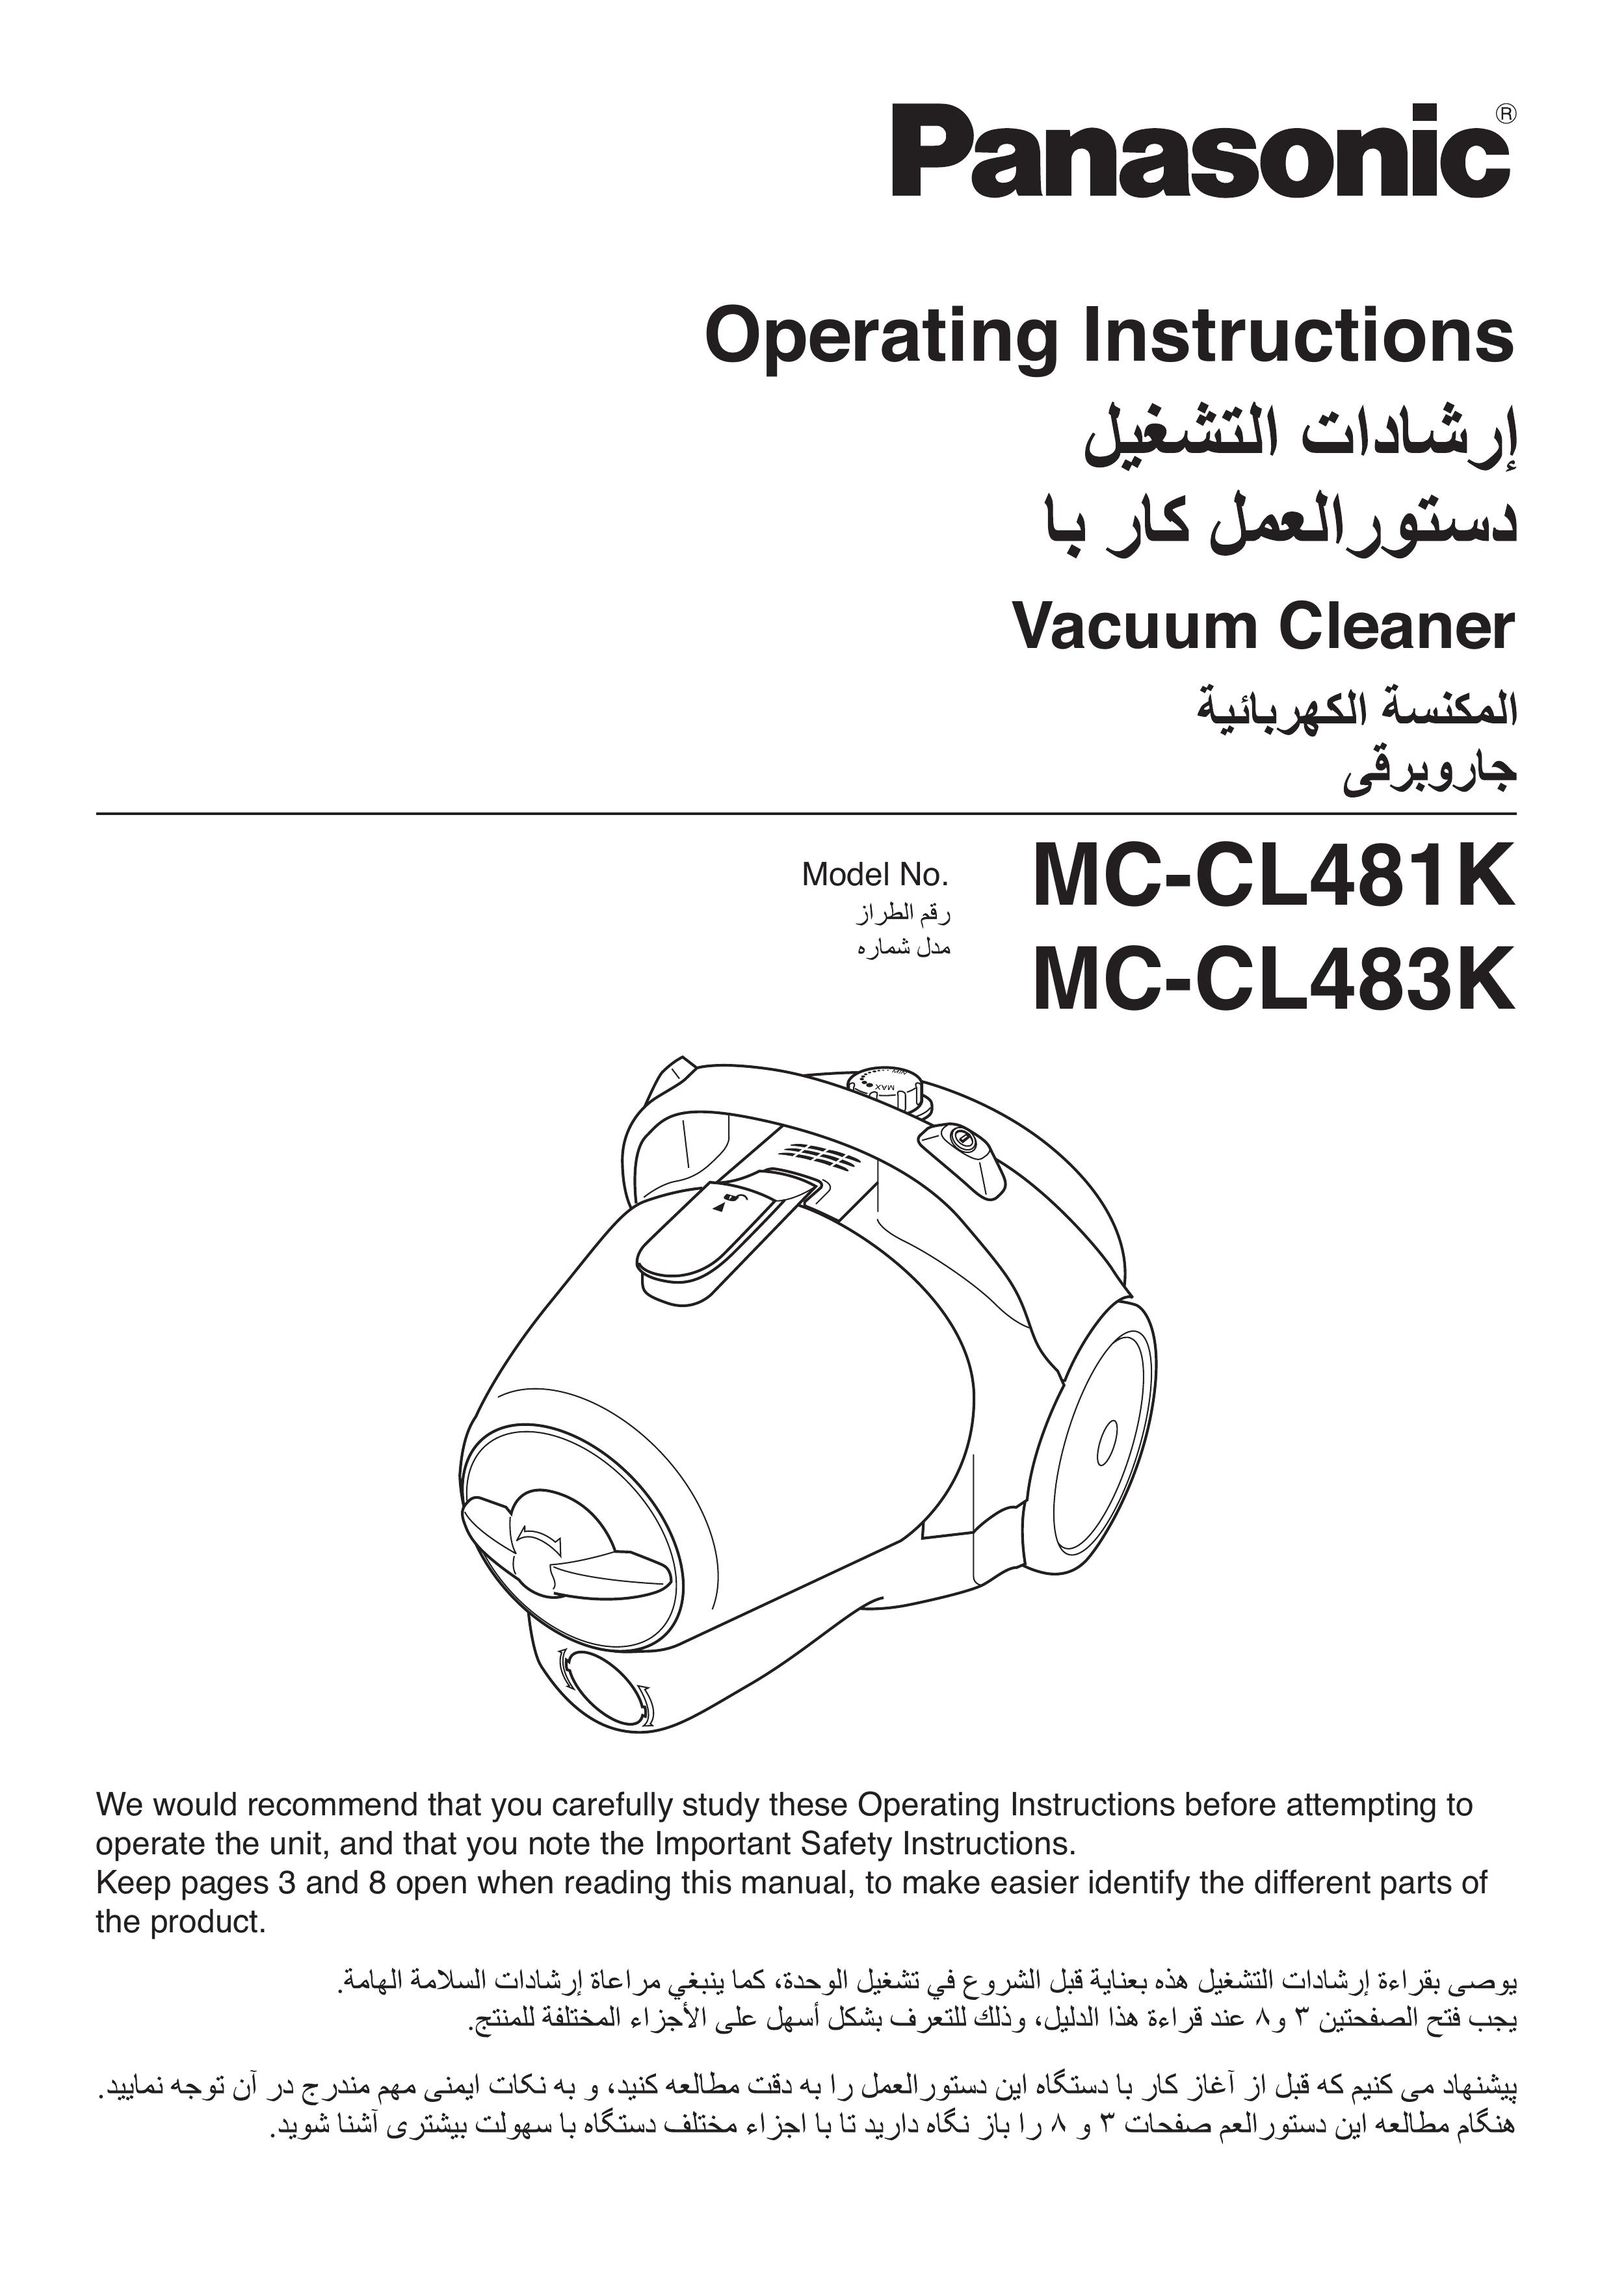 Panasonic MC-CL481K Vacuum Cleaner User Manual